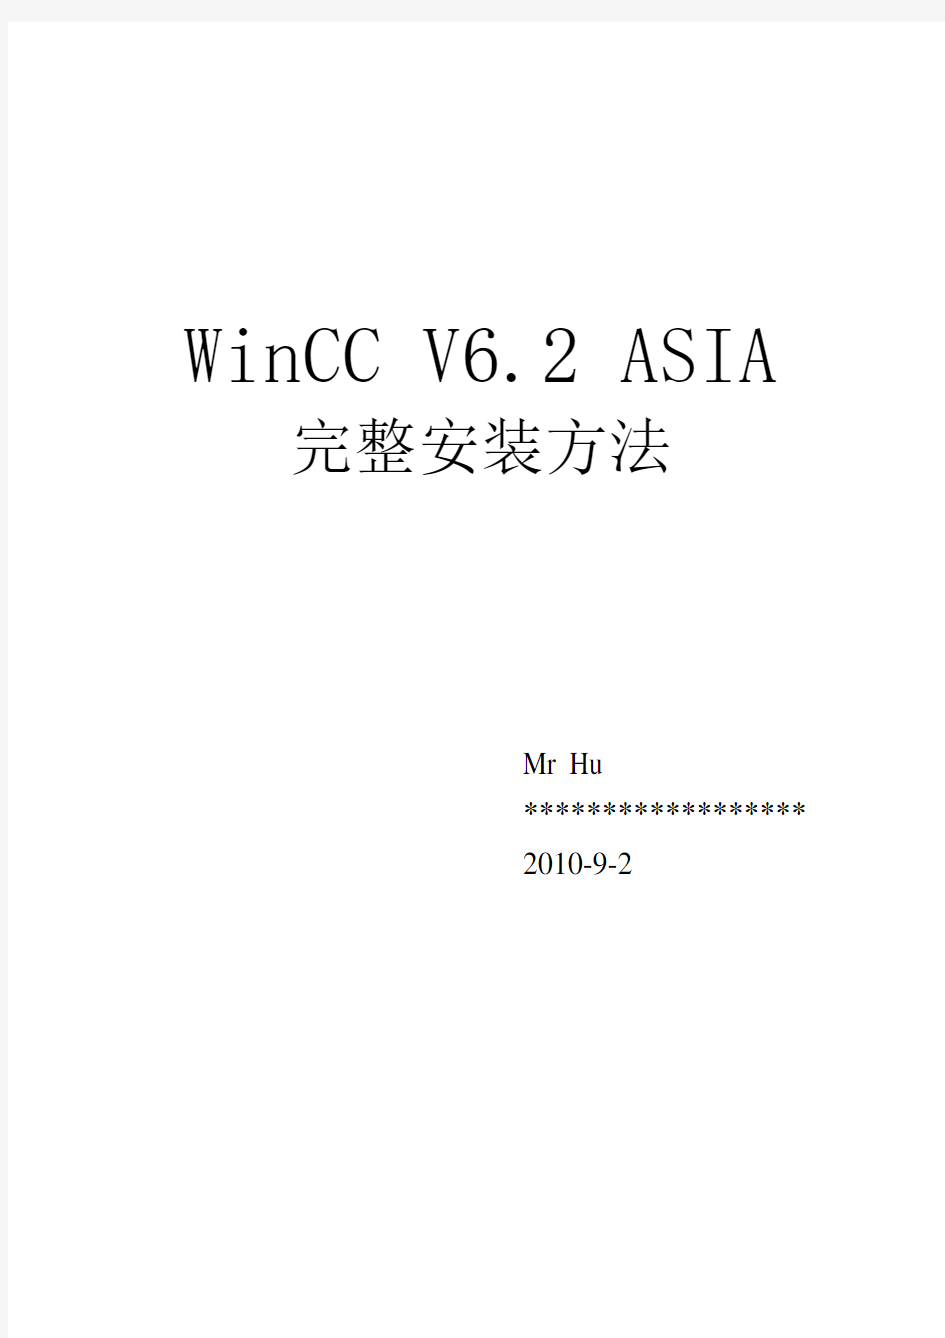 WinCC6.2完全安装方法